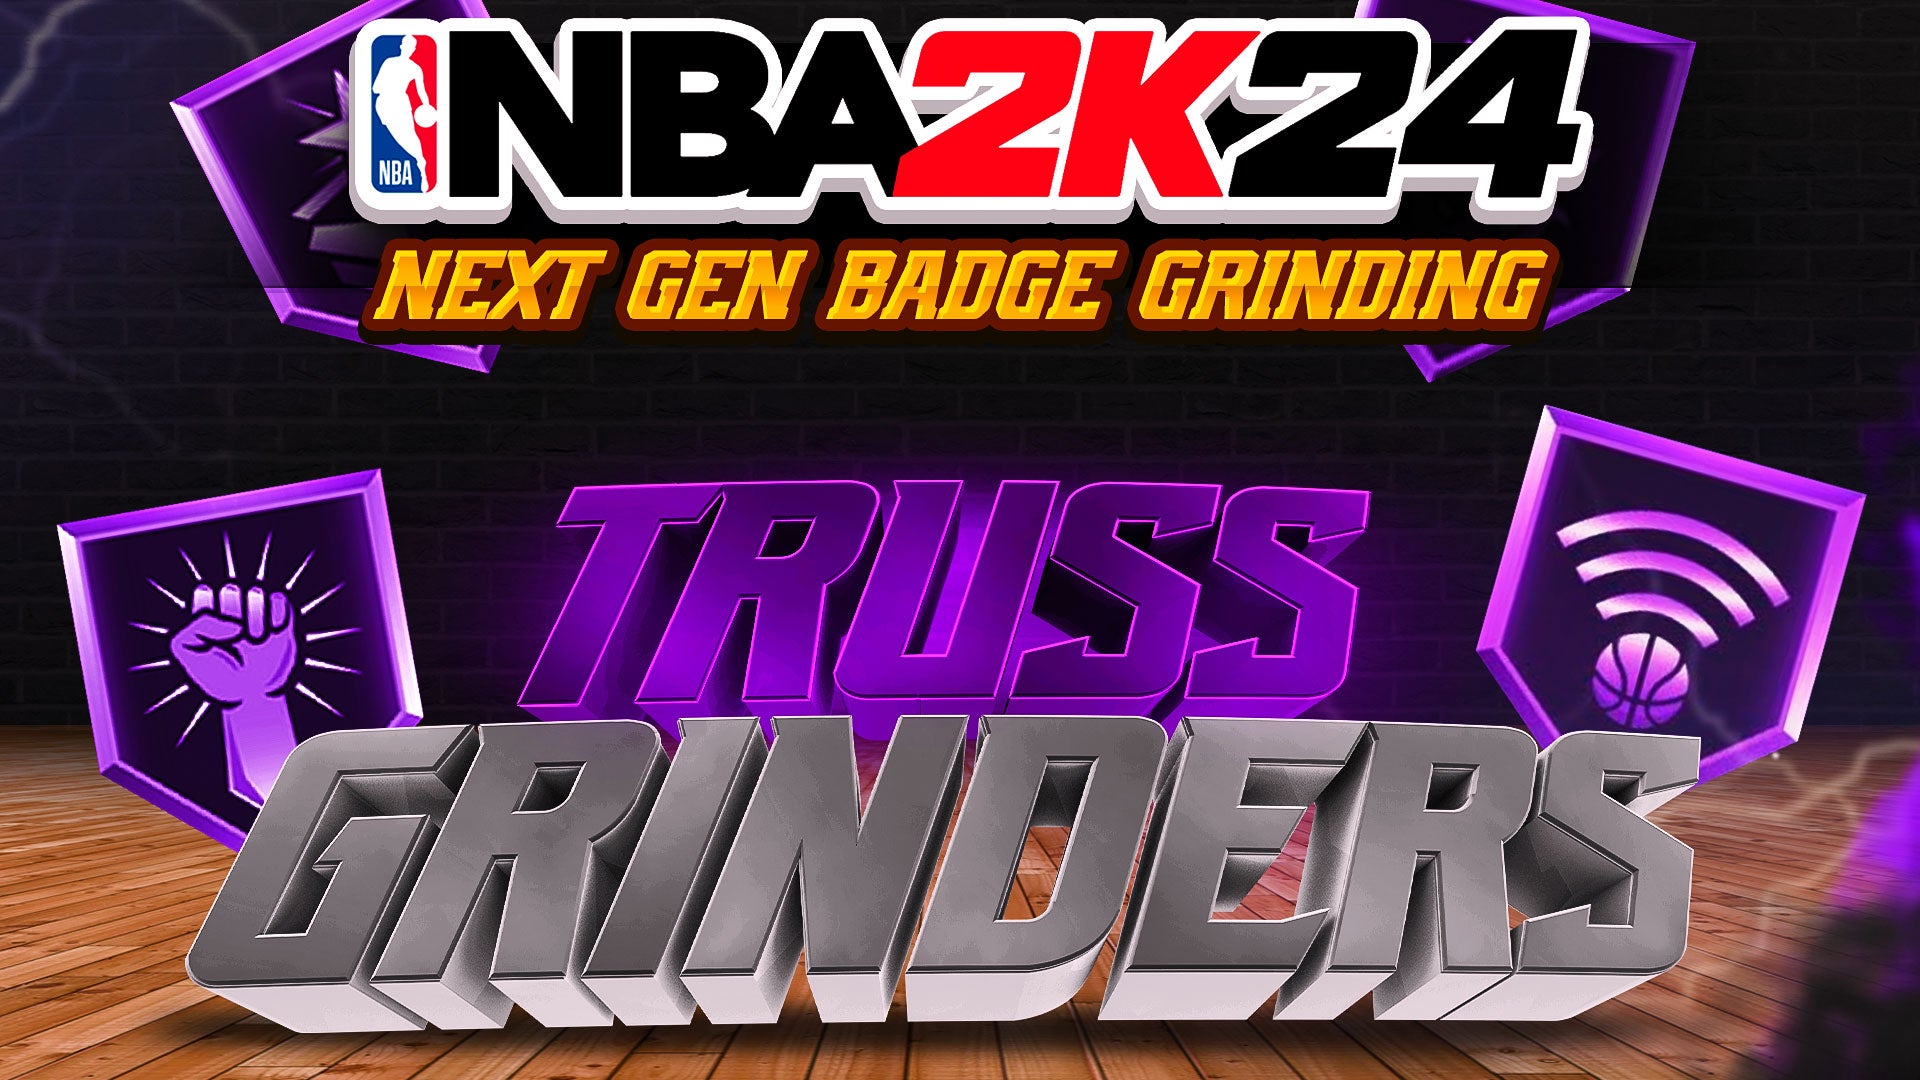 NBA 2K24 Next Gen Badge Grinding